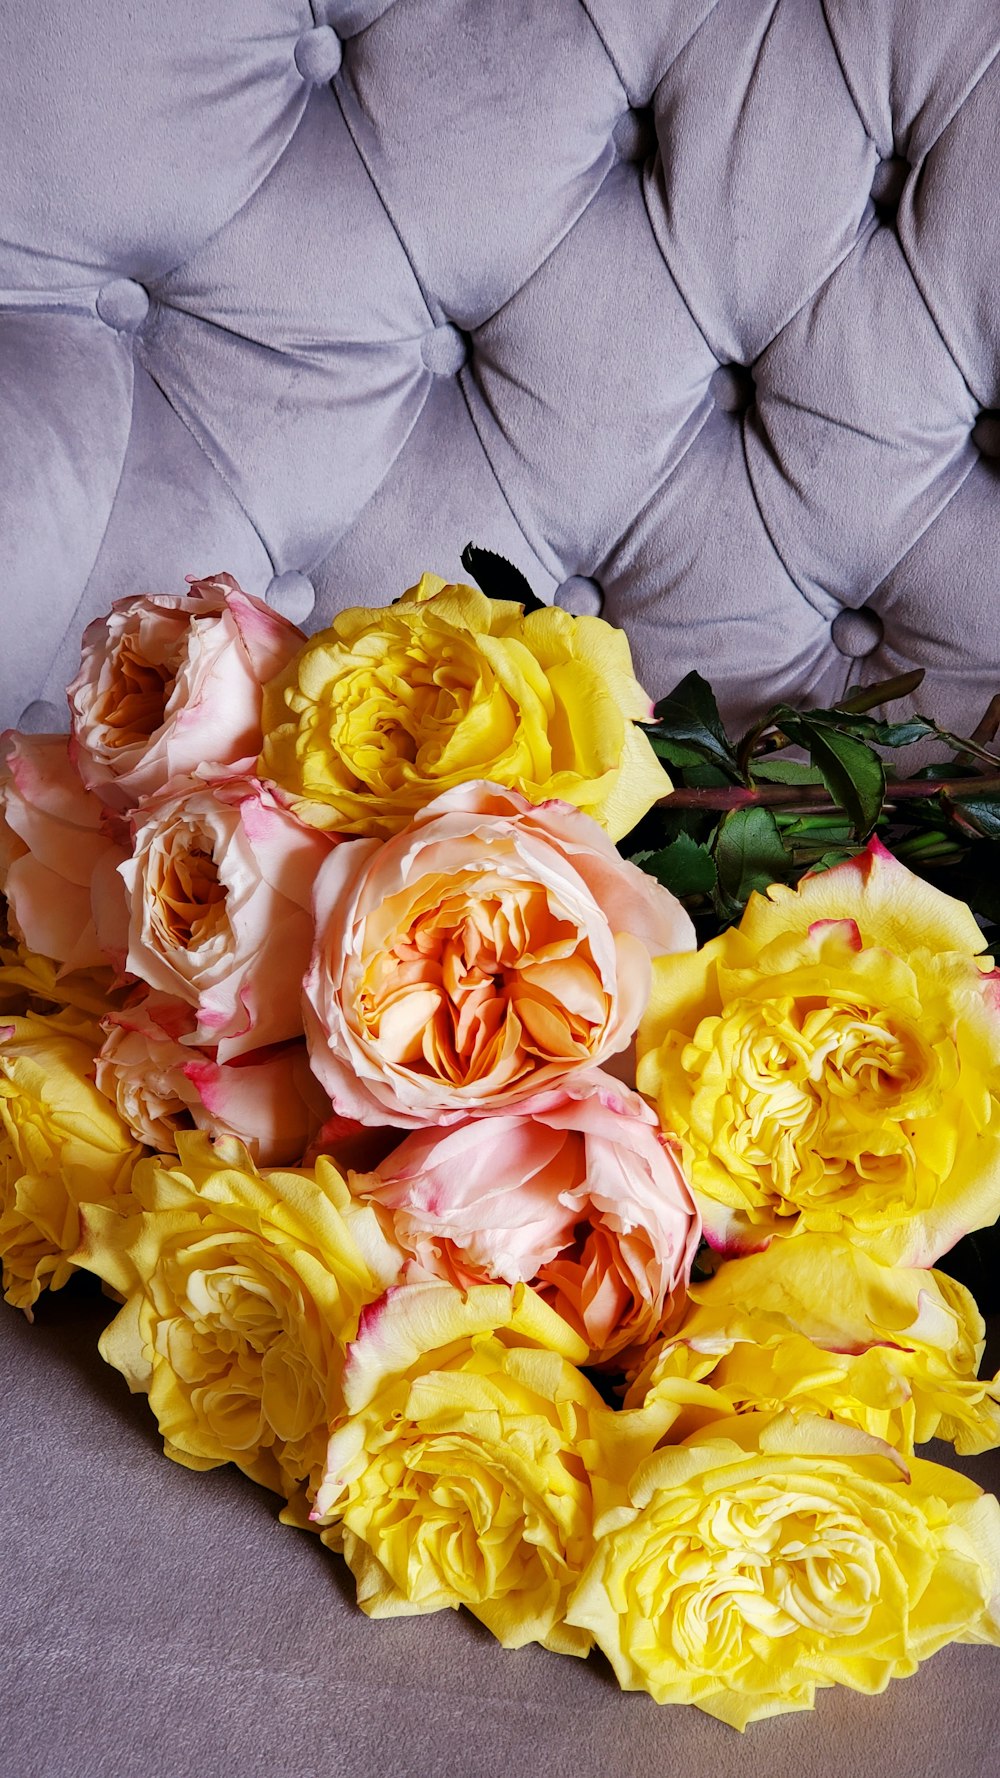 flores de rosas amarillas y rosadas en flor